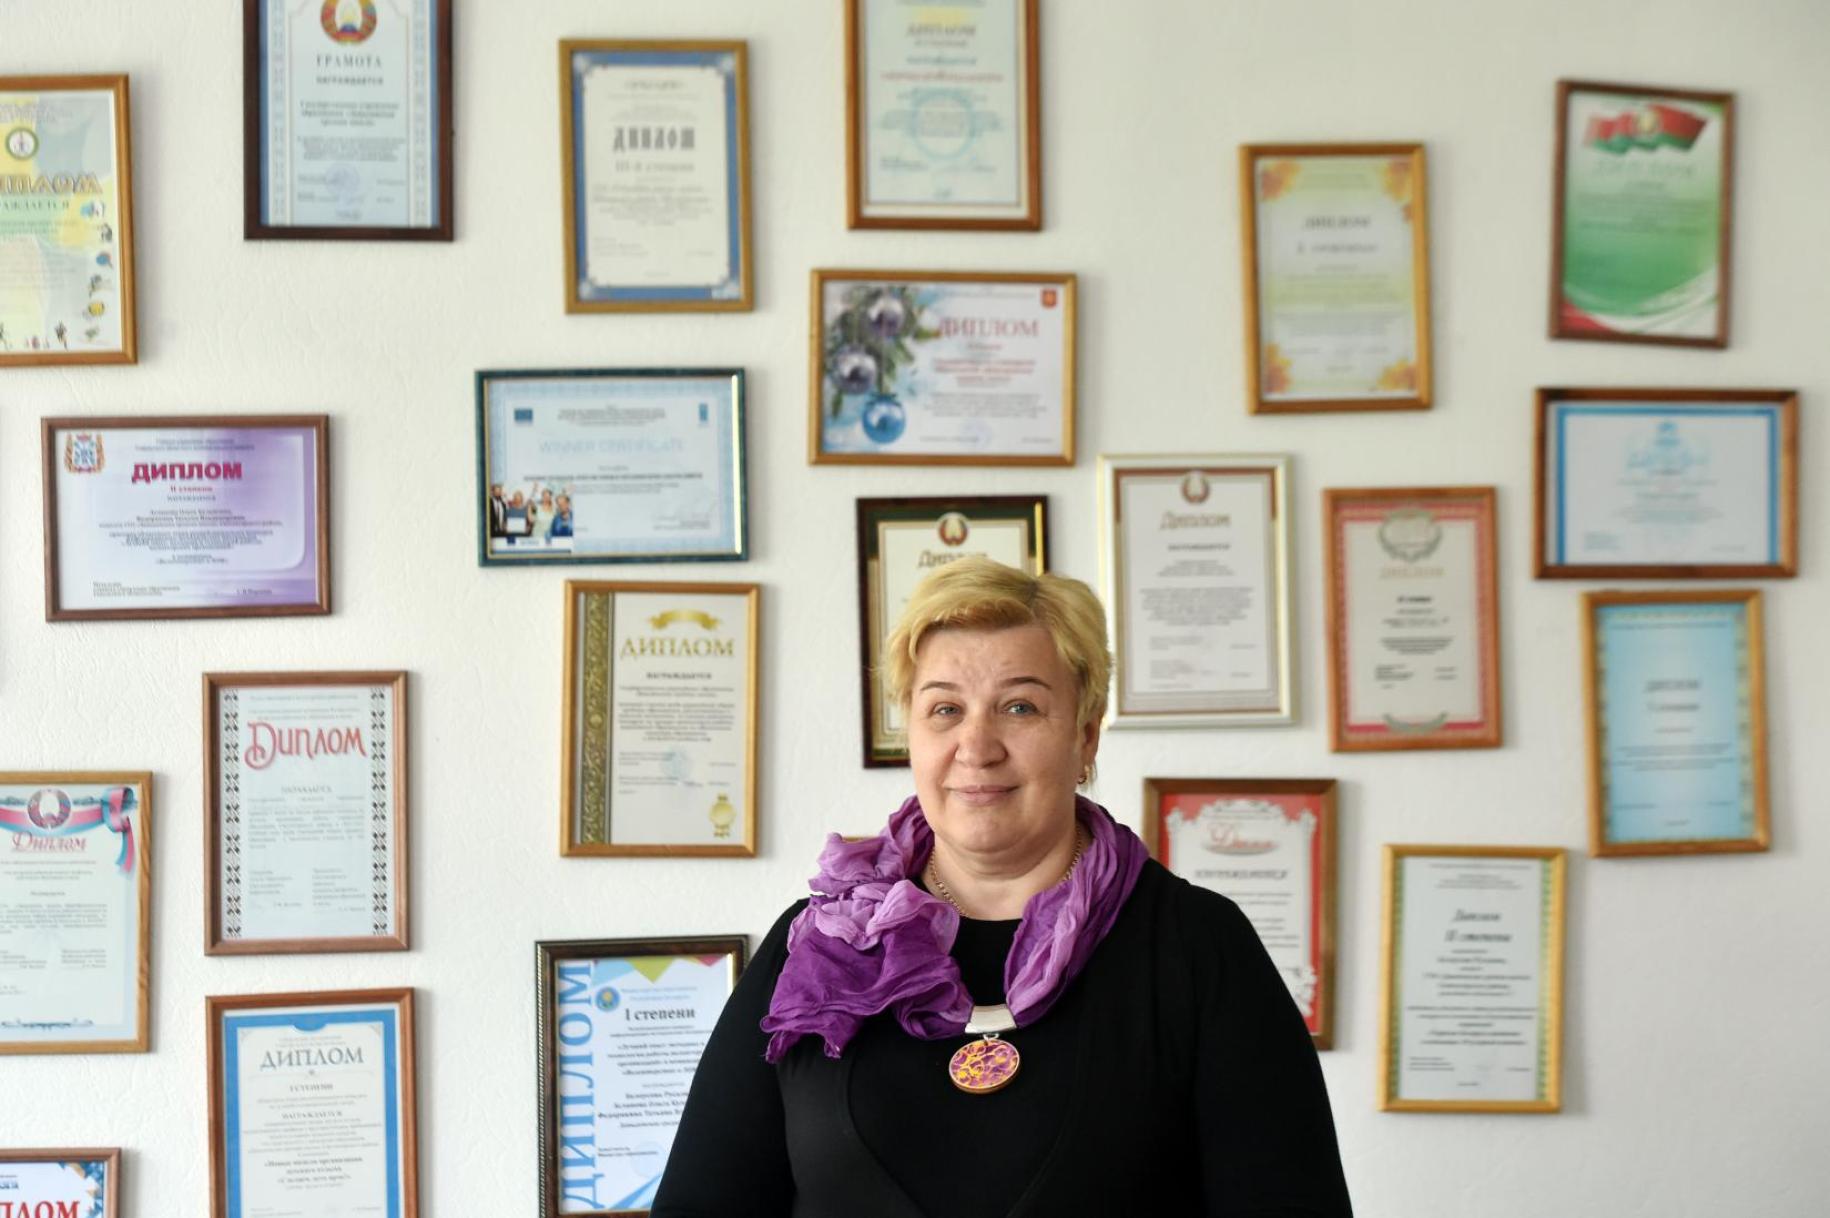 تقف سفيتلانا ماركيفيتش، مديرة مدرسة دافيدوفسكايا الثانوية بفخر أمام جدار من الشهادات المؤطرة.